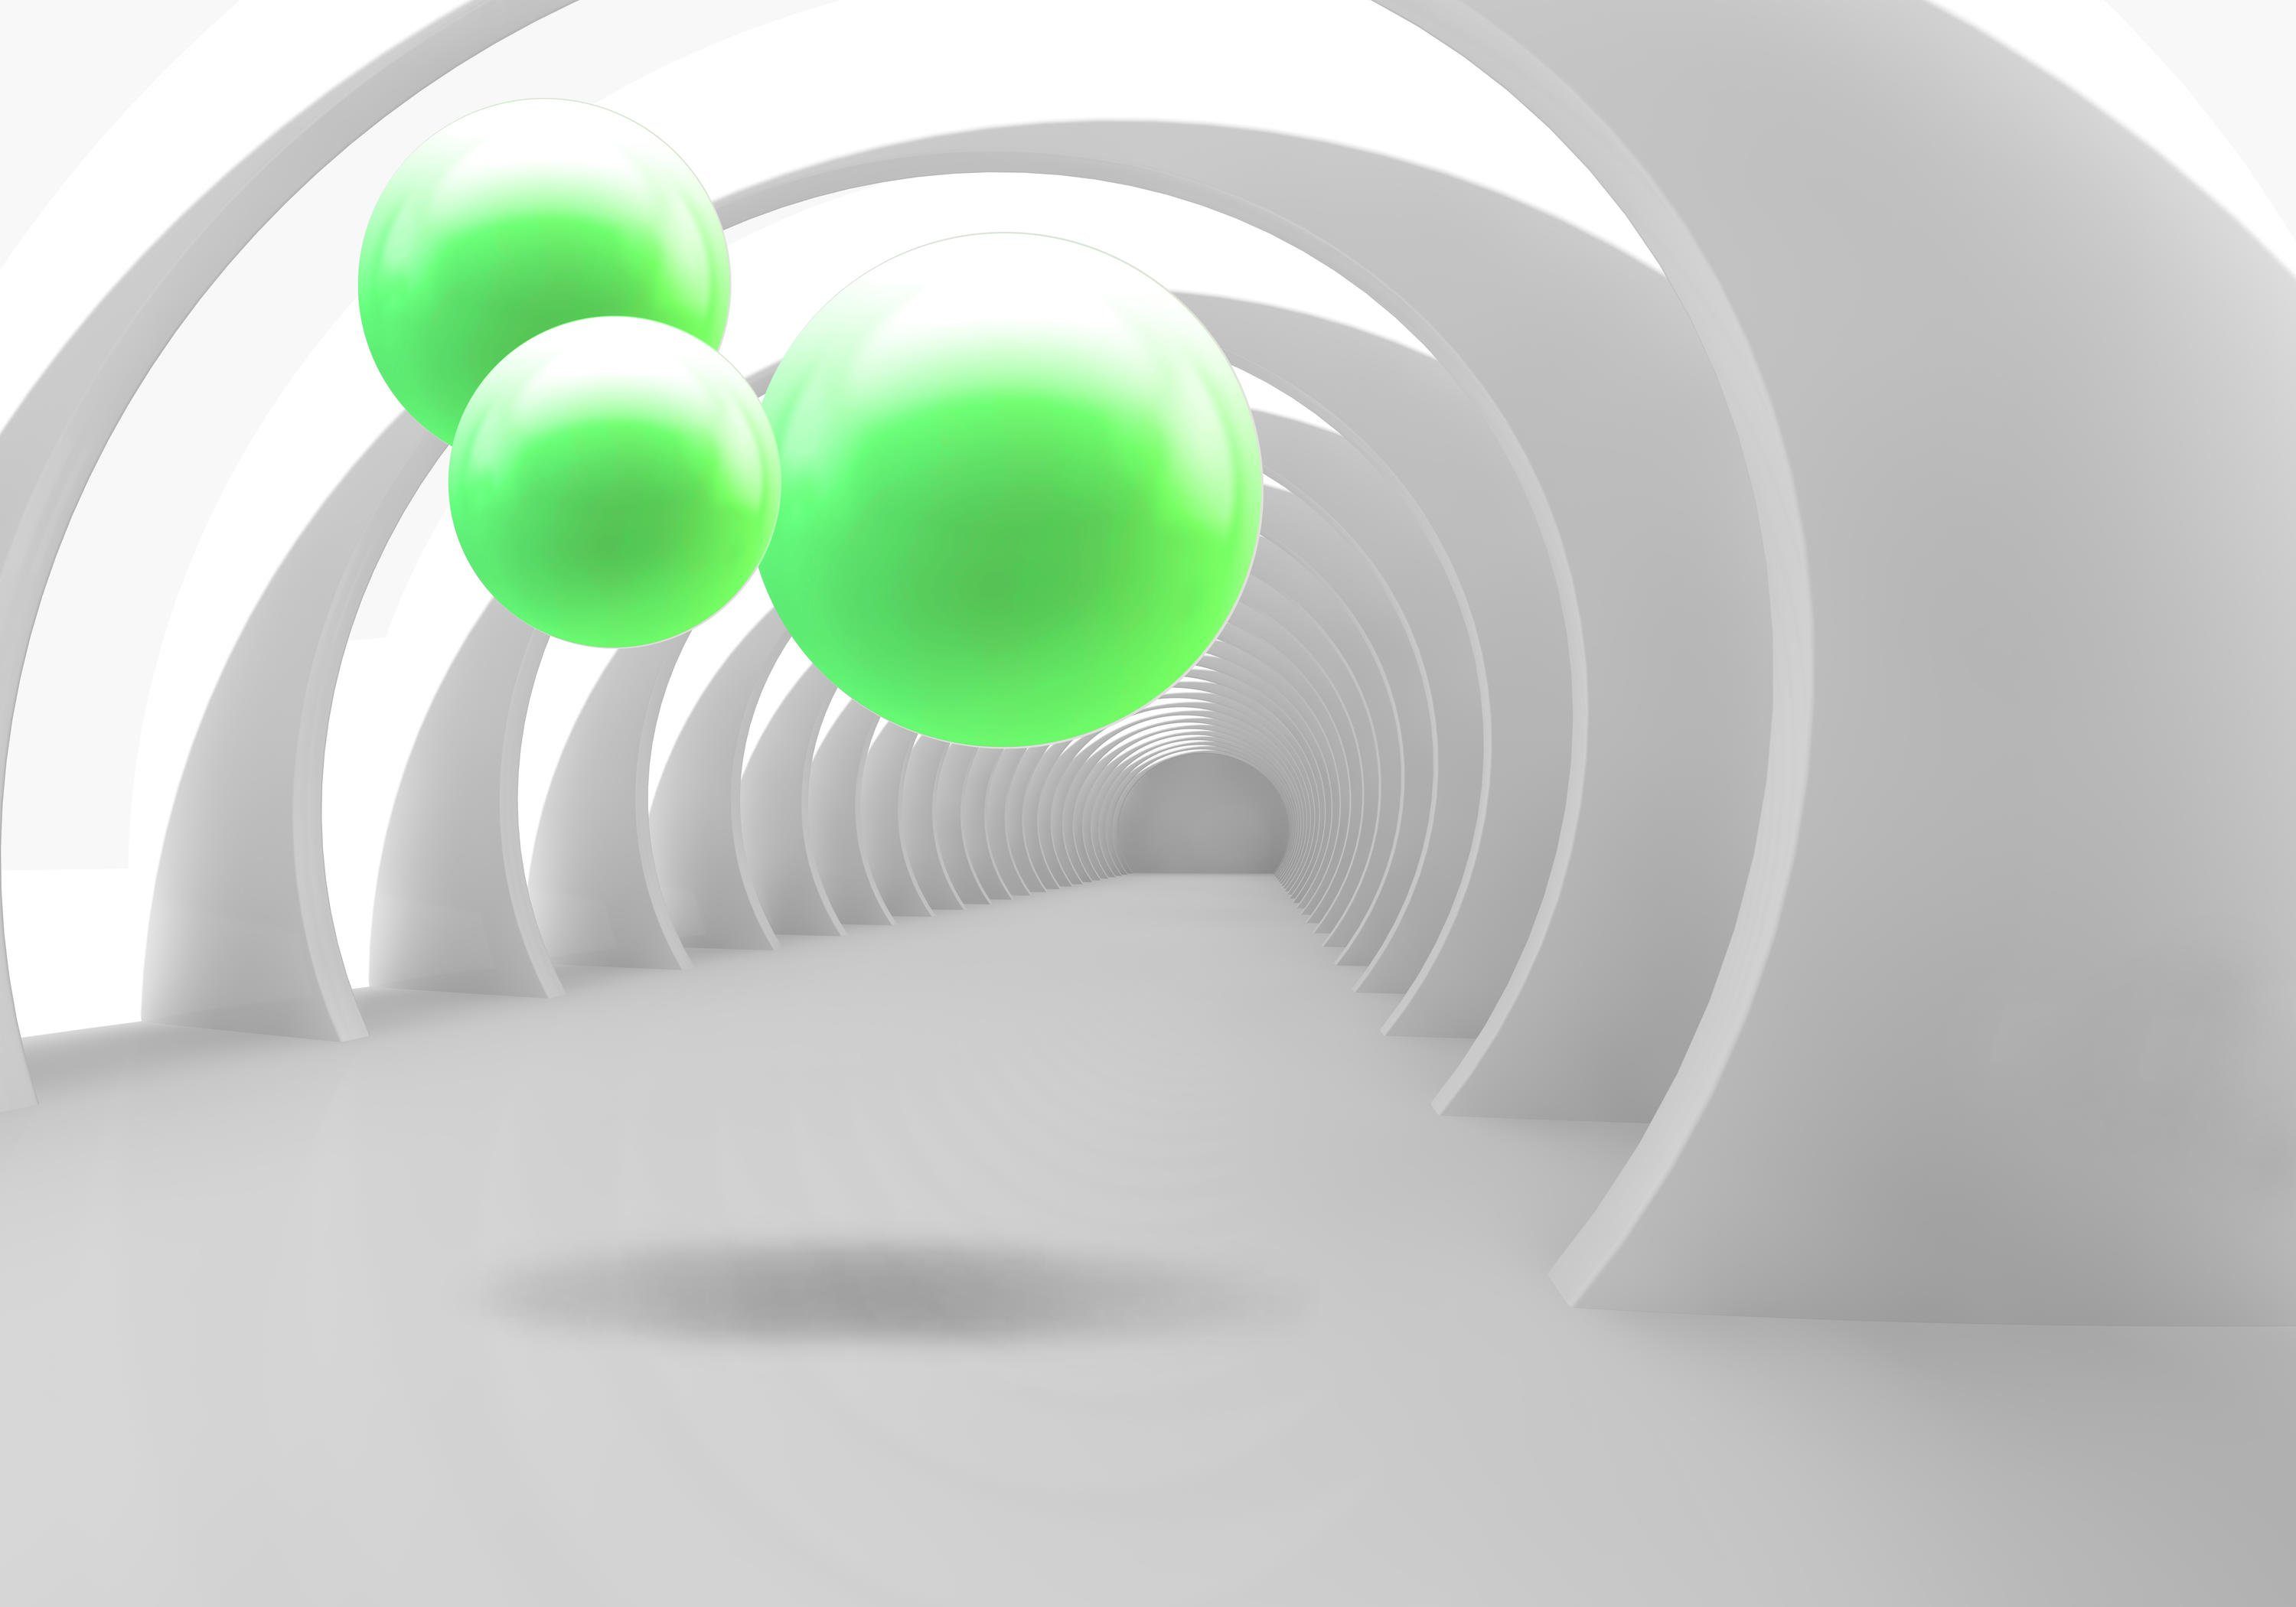 wandmotiv24 Fototapete weiss Korridor 3D hell grün Kugeln, strukturiert, Wandtapete, Motivtapete, matt, Vinyltapete, selbstklebend